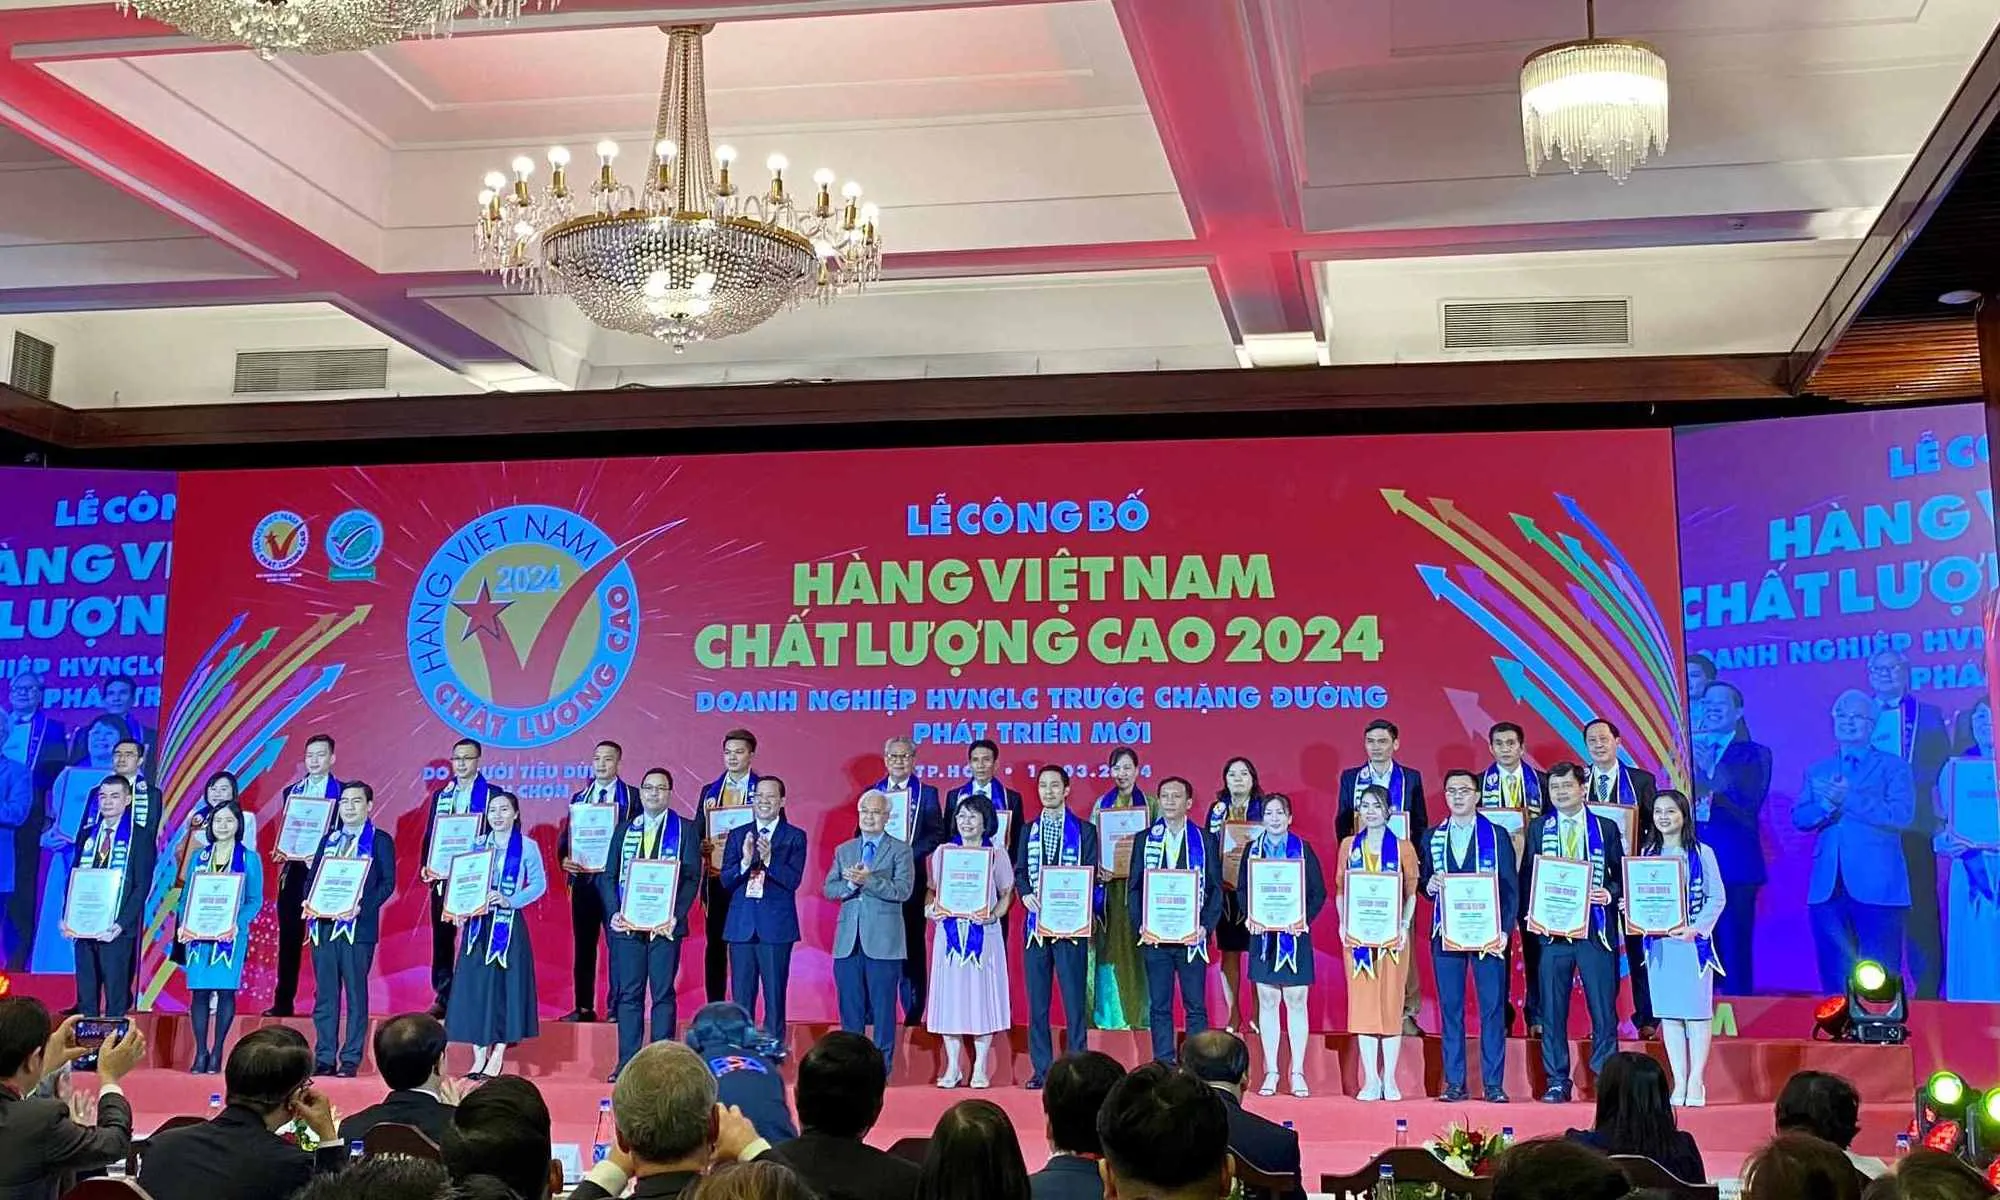 529 doanh nghiệp hàng Việt Nam chất lượng cao năm 2024